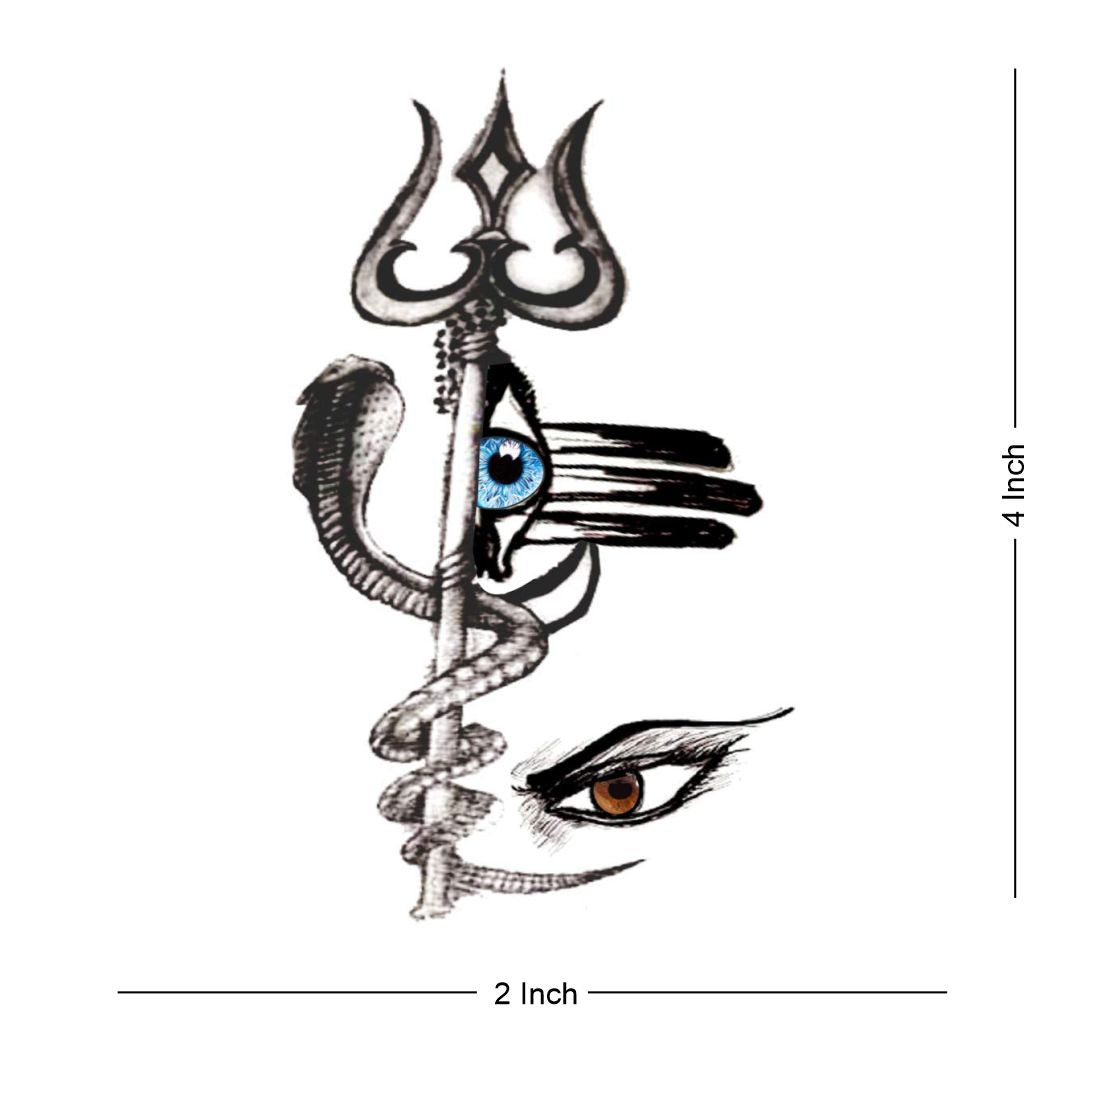 Tattoo uploaded by Rtattoo studio • Trishul tattoo om tattoo . . . . . . .  Mahadev tattoo Mahakal tattoo Shiva tattoo Mahakal tattoo Trishul tattoo .  . . #Trishultattoo #Mahadevtattoo #